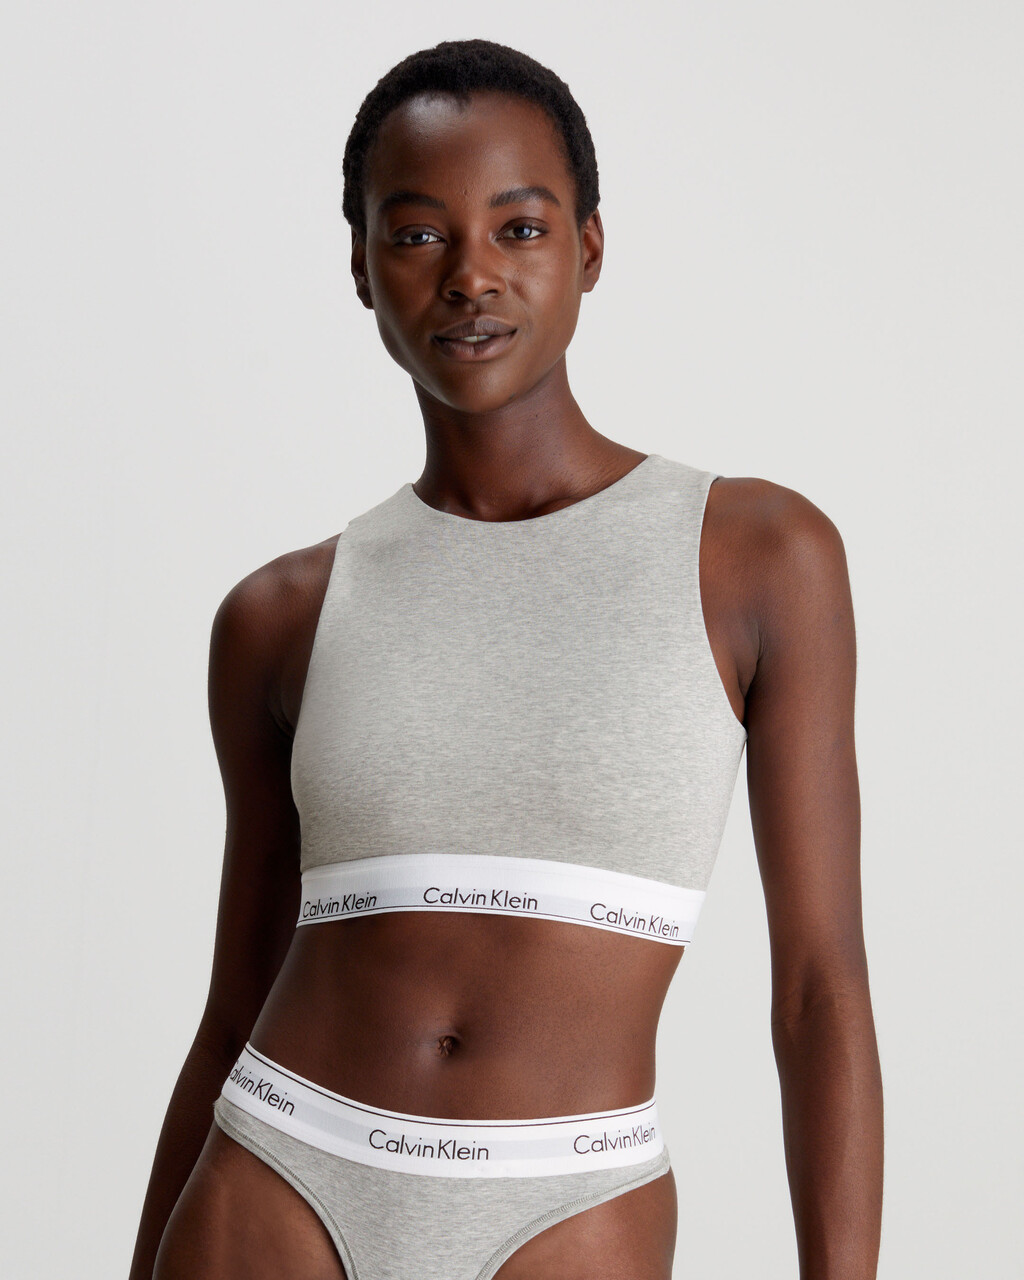 Calvin Klein Women's Modern Cotton Skinny Strap Bralette Grey, XS 32A 30B